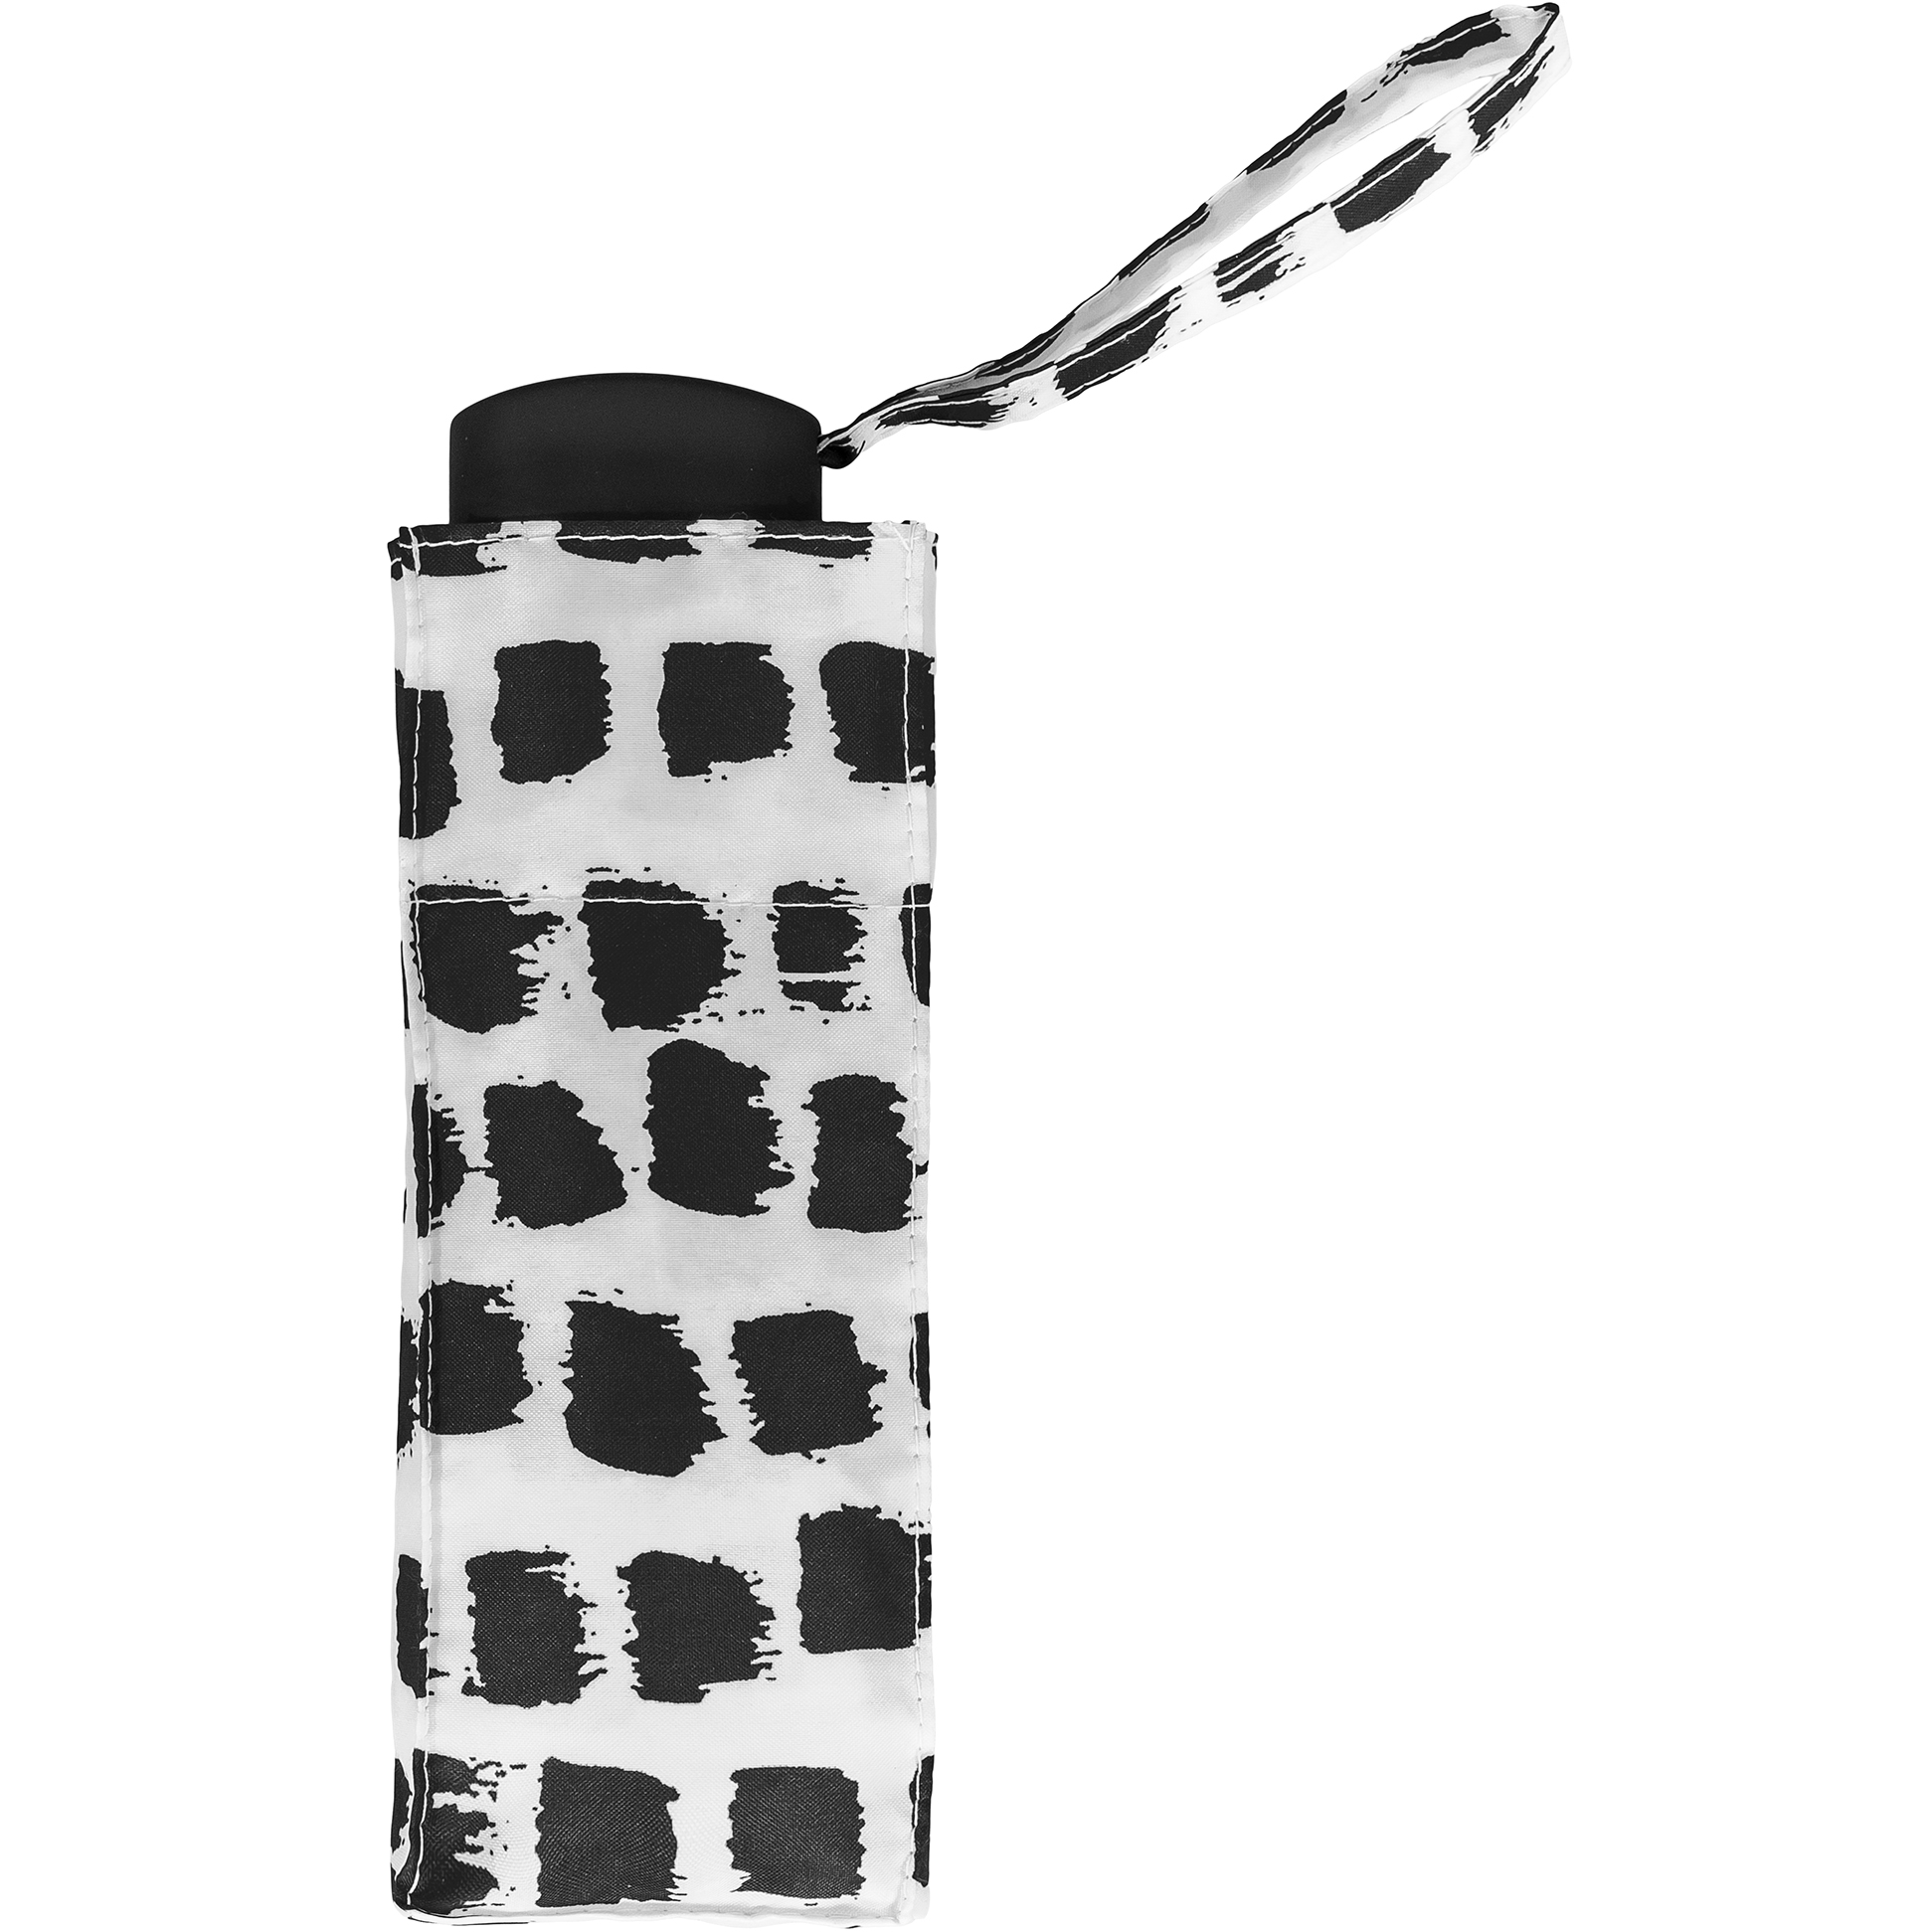 Super mini umbrella with black and white spots (51034-2)